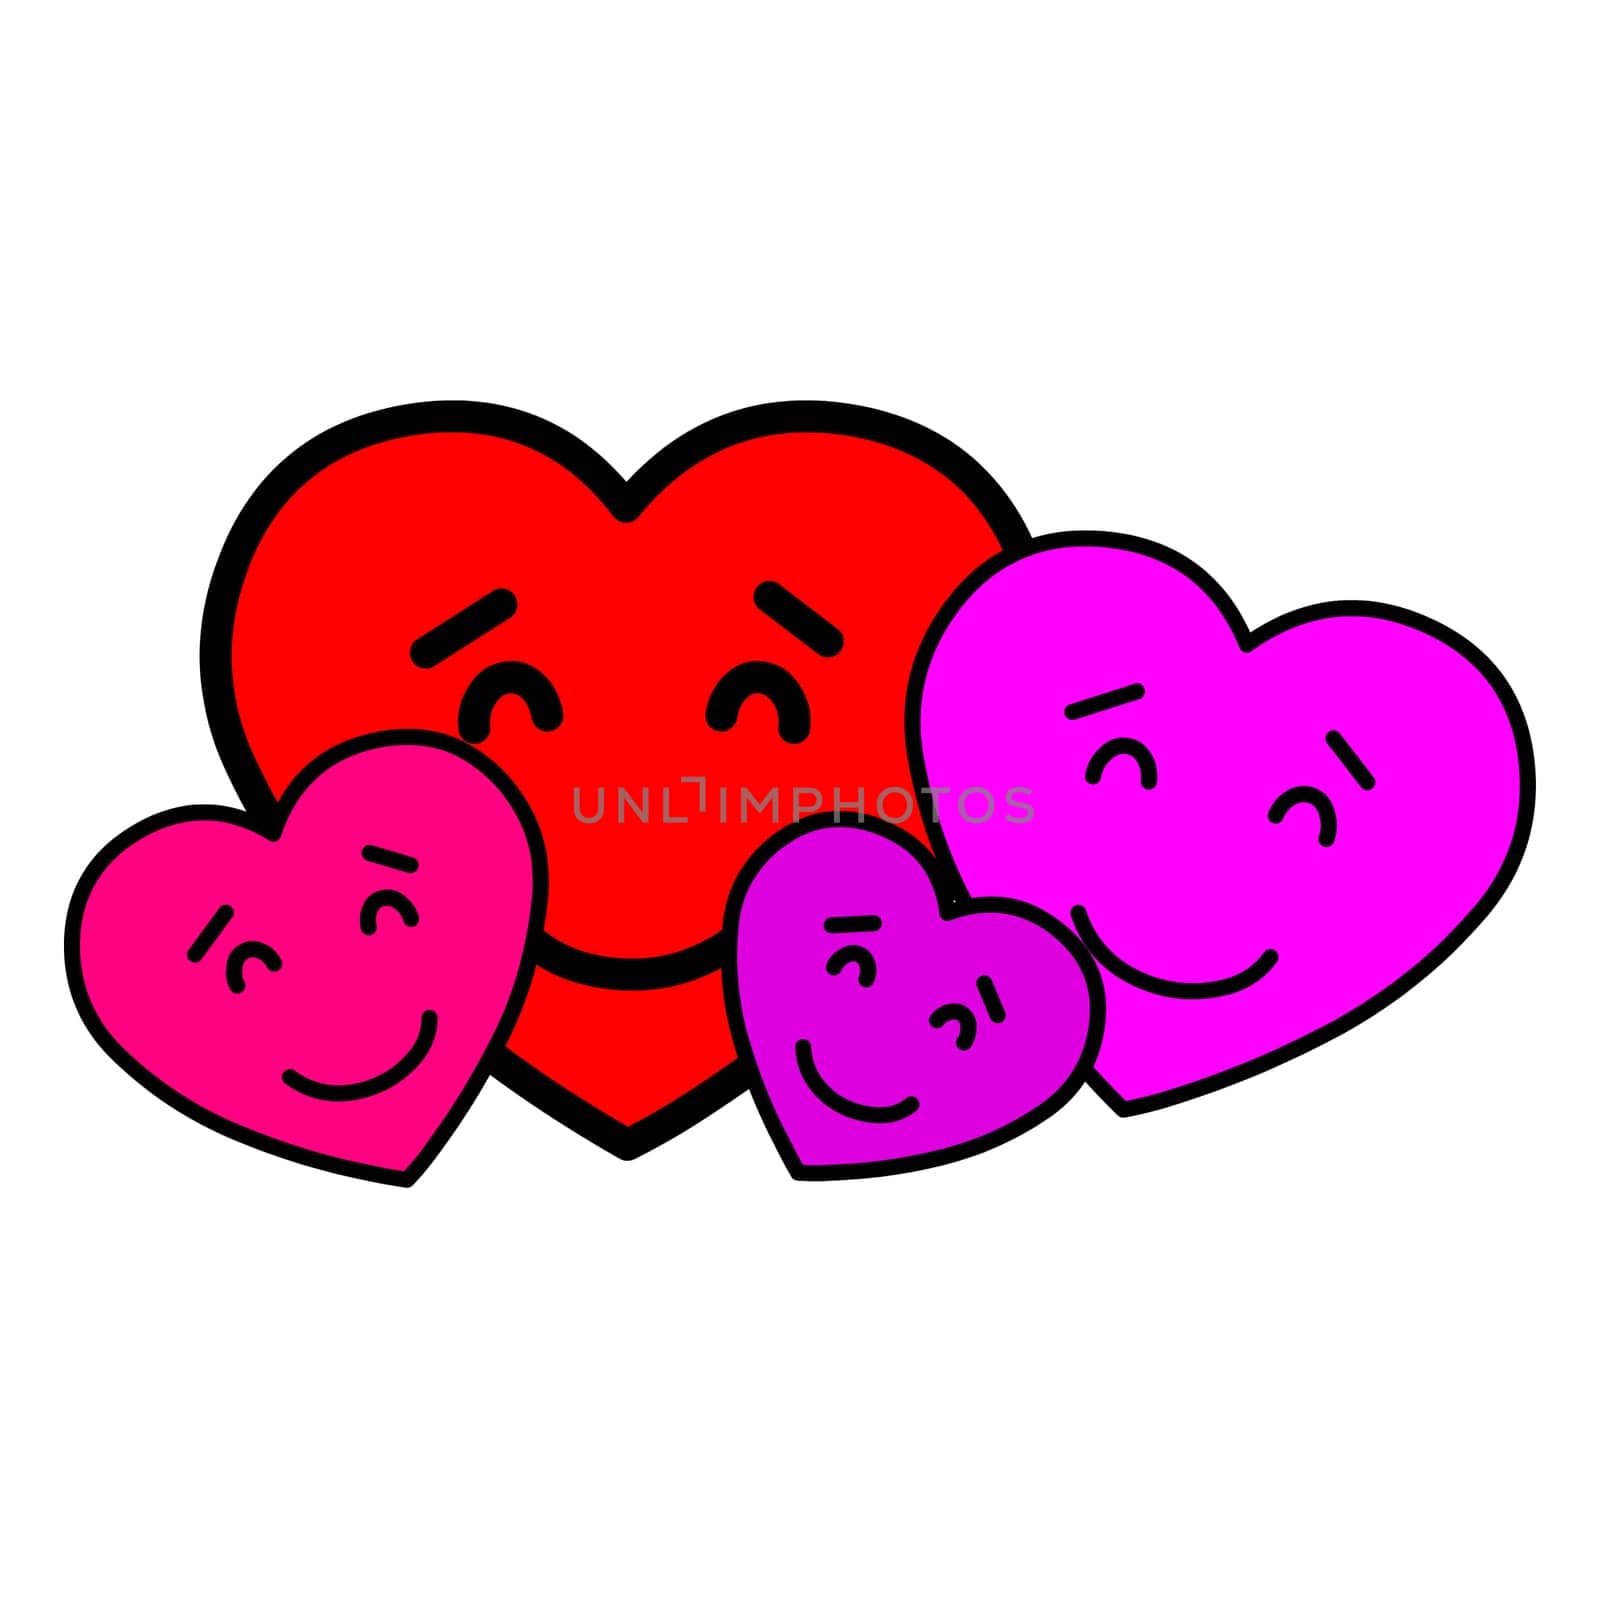 Family of love hearts by Bigalbaloo